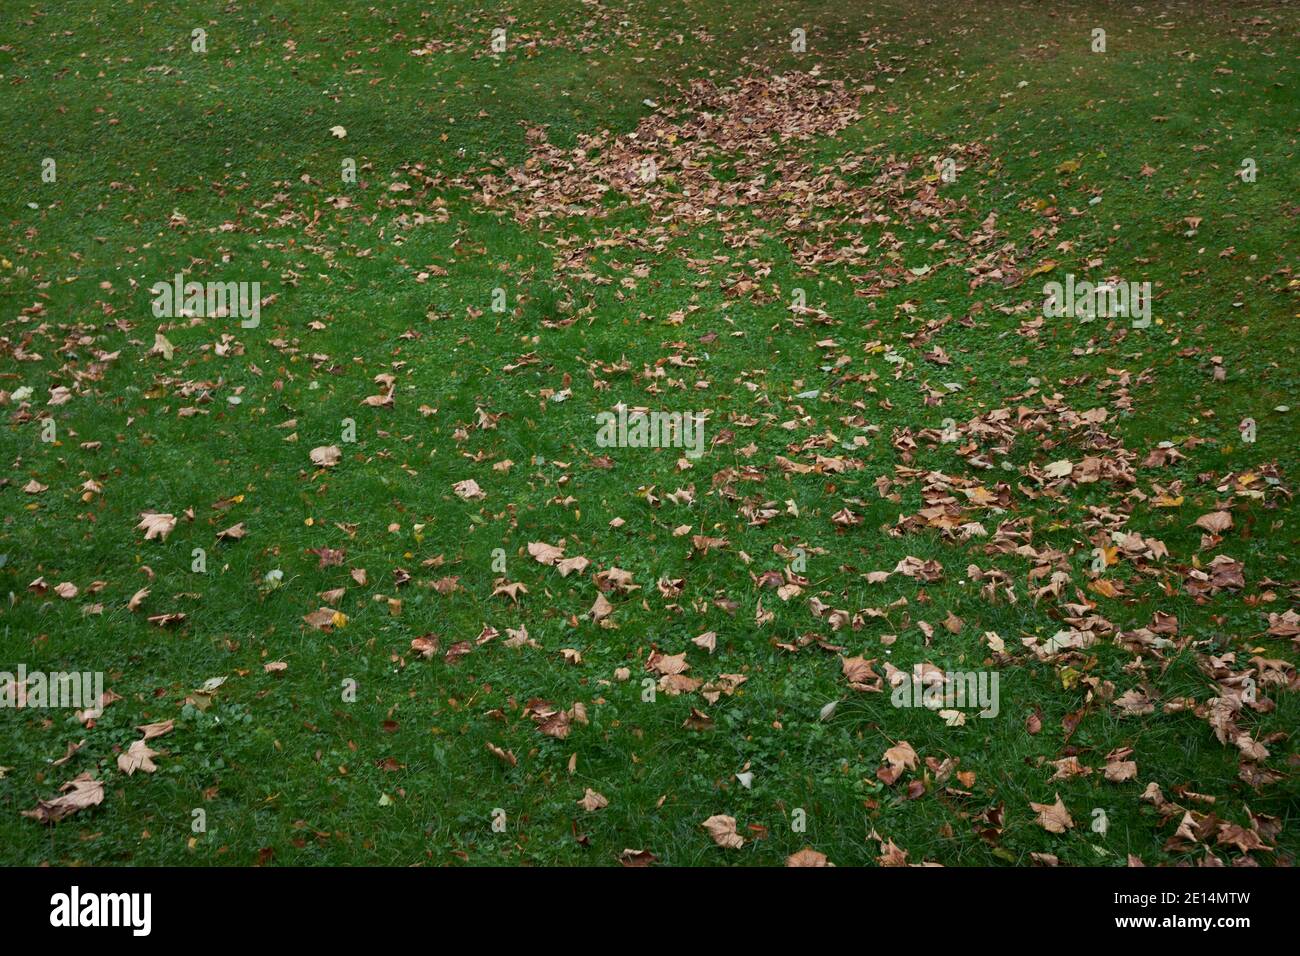 Auf einer gruenen Rasenflaeche liebt braunes Herbstlaub, das zentralperspektivisch nach hinten auslaeuft Stock Photo